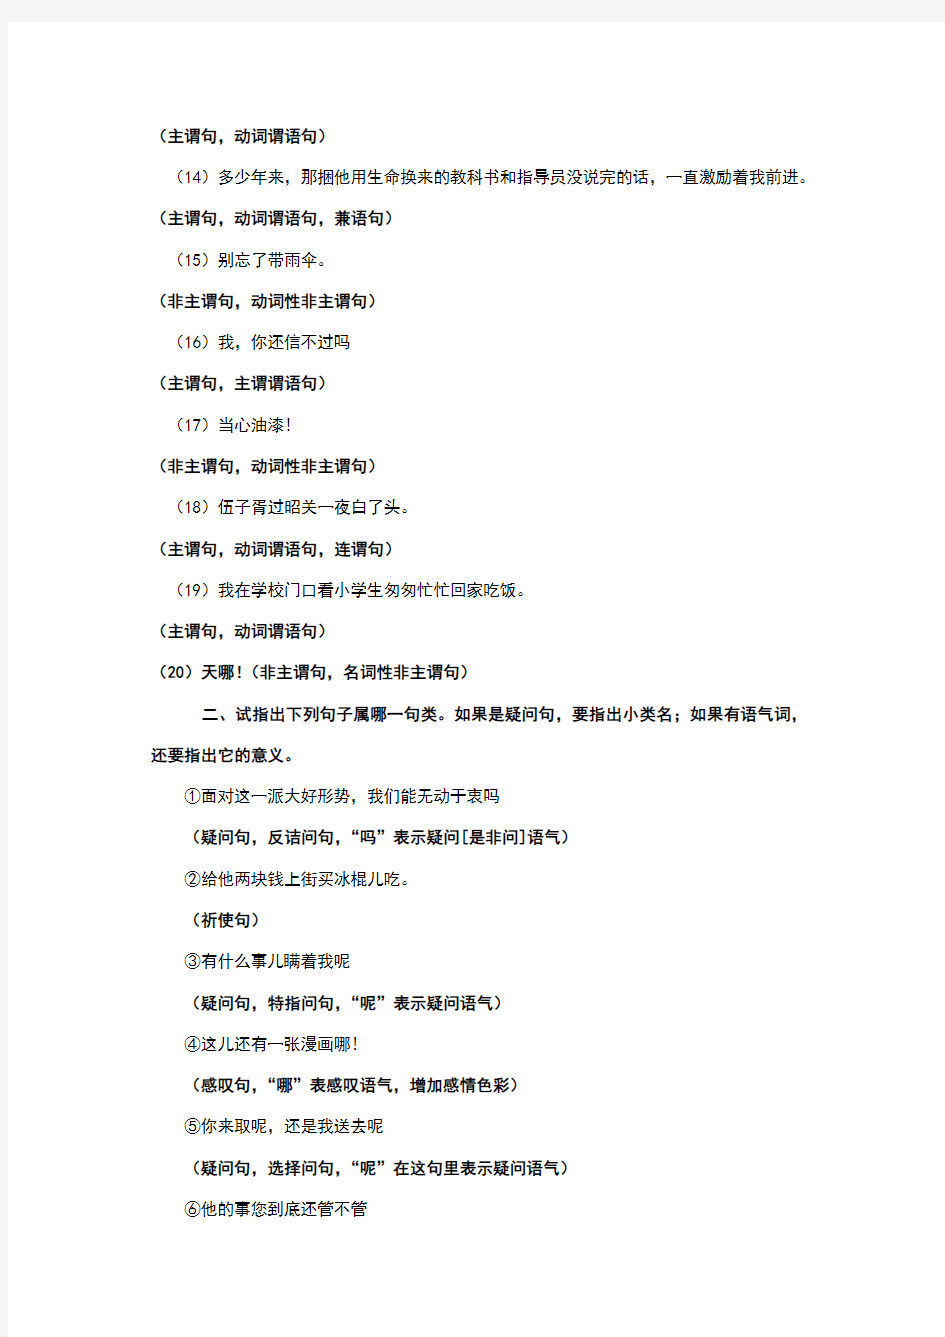 黄廖《现代汉语》(增订四版)下册第五章语法思考和练习六答案